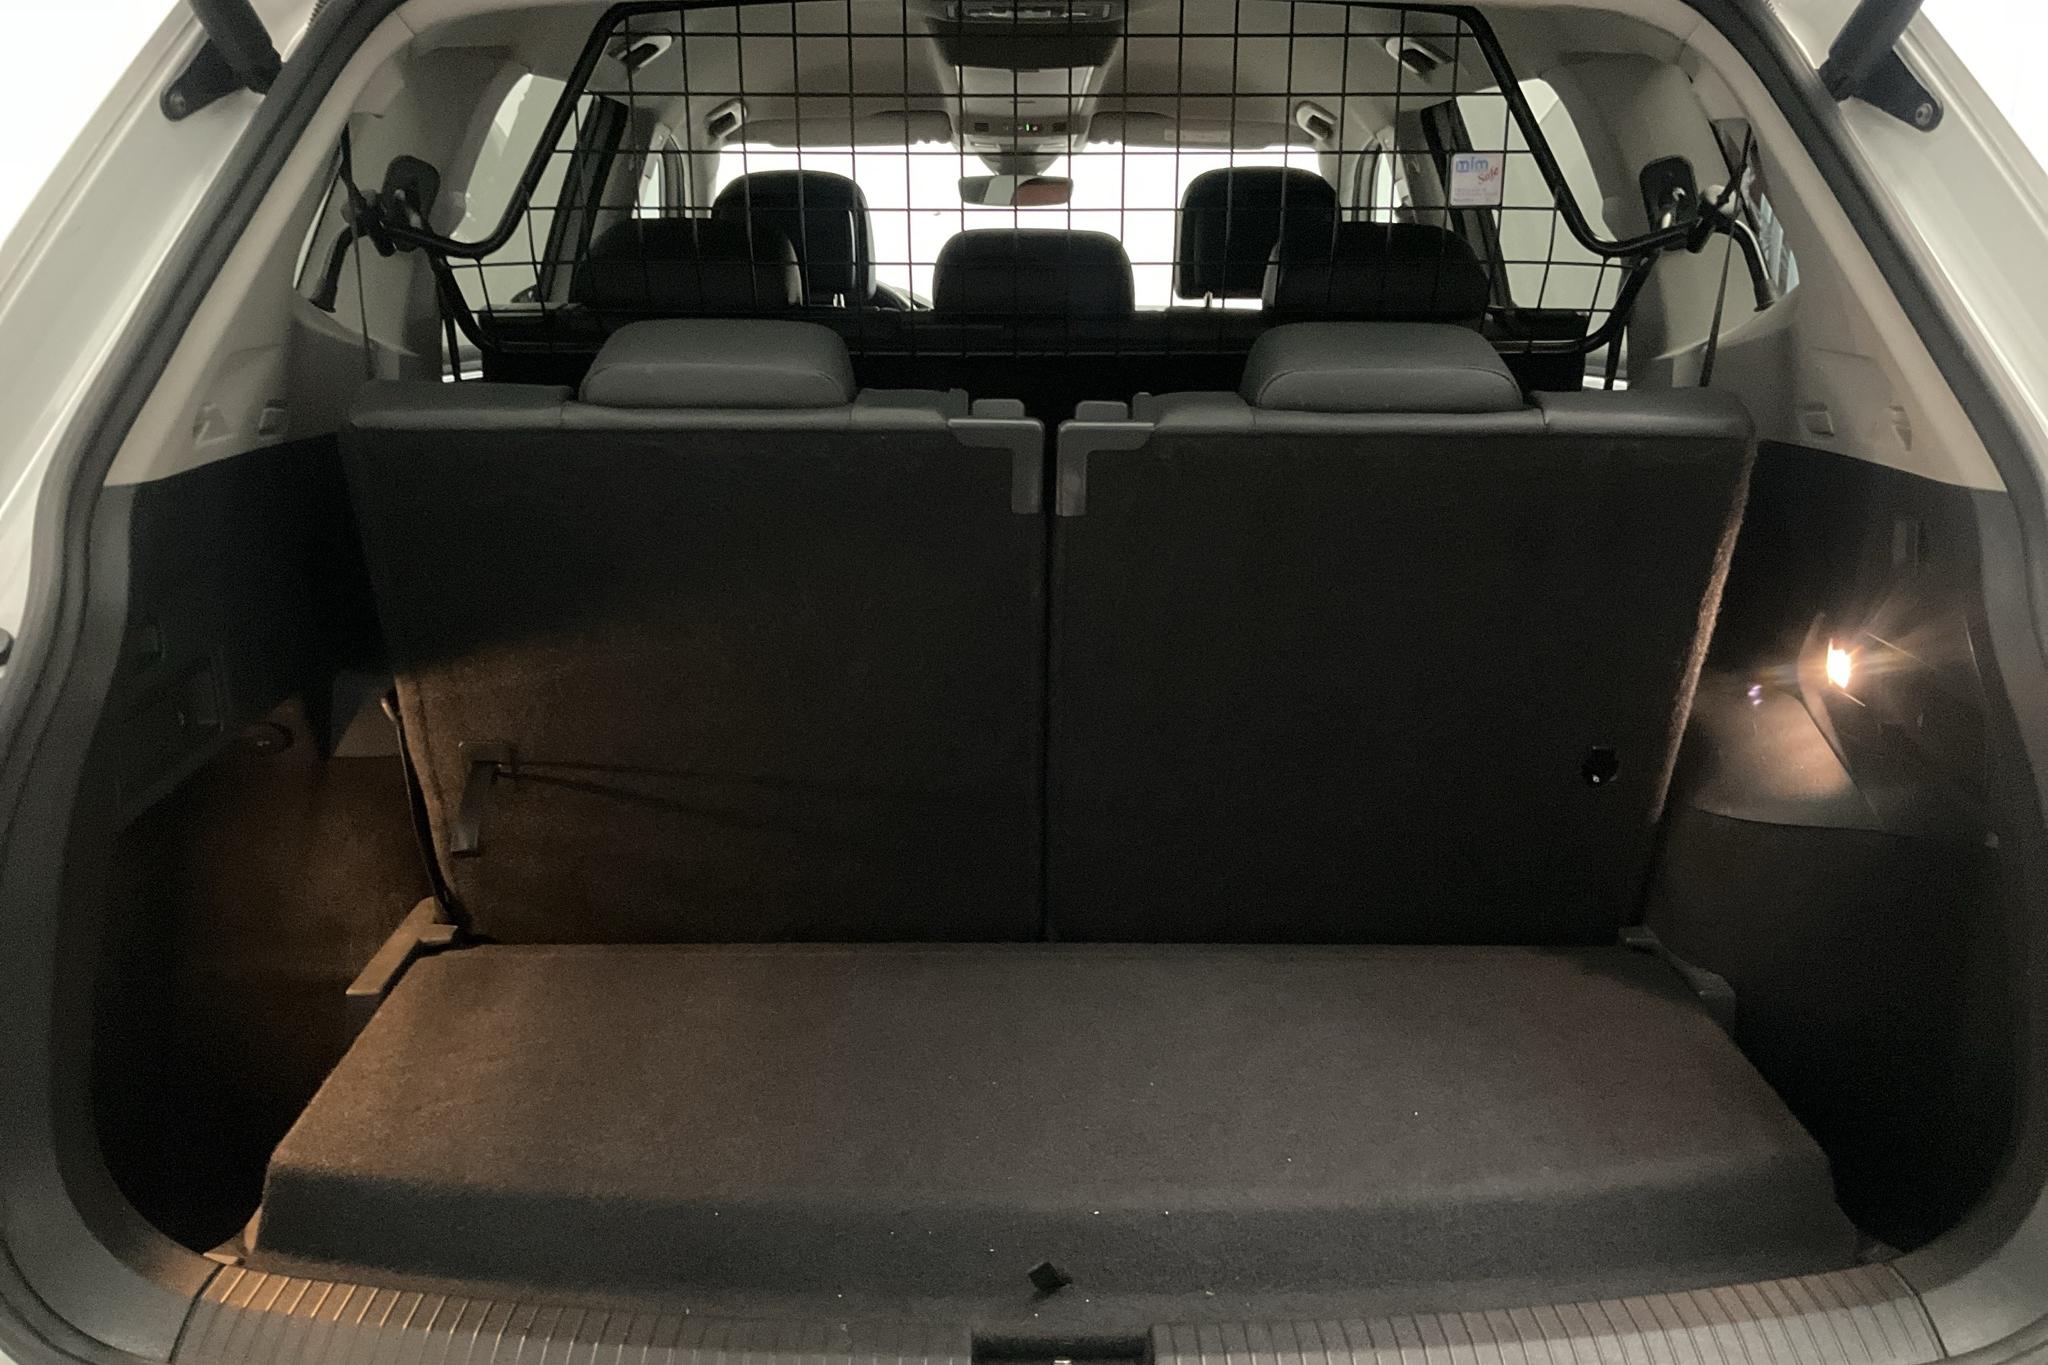 VW Tiguan Allspace 2.0 TDI 4MOTION (190hk) - 272 430 km - Automatic - white - 2020